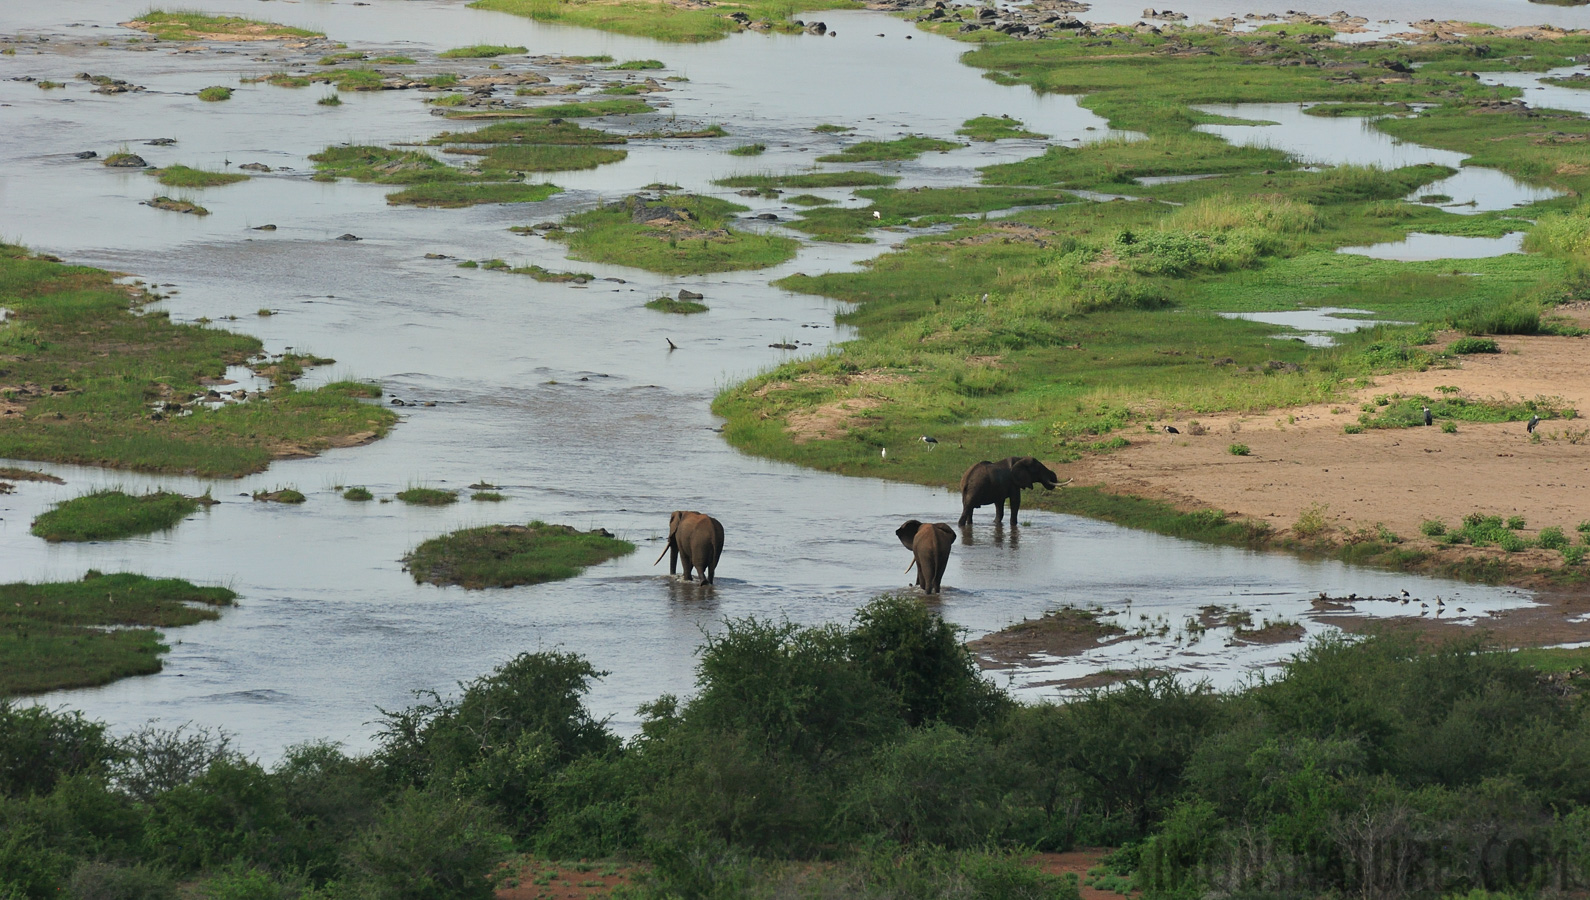 Kruger National Park [550 mm, 1/3200 sec at f / 8.0, ISO 1600]